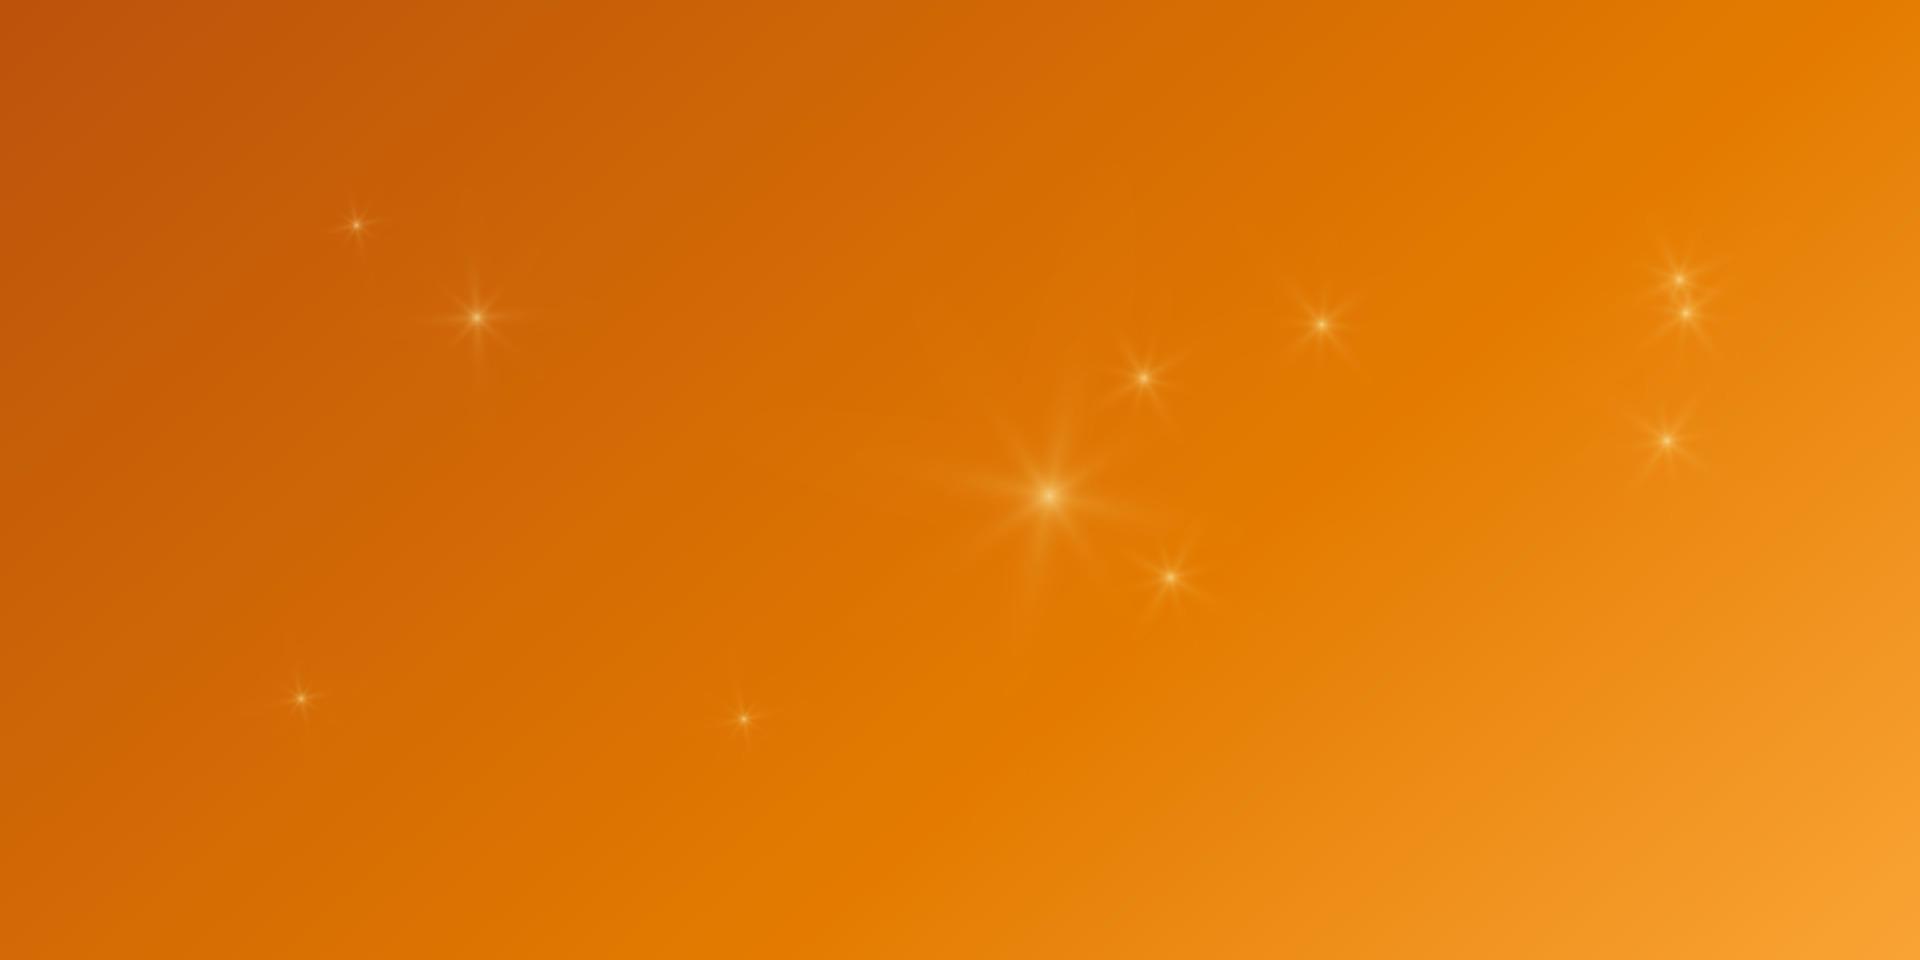 fond lumineux coloré dégradé avec des étoiles flare des lumières éblouissantes. format horizontal illustration vectorielle vecteur